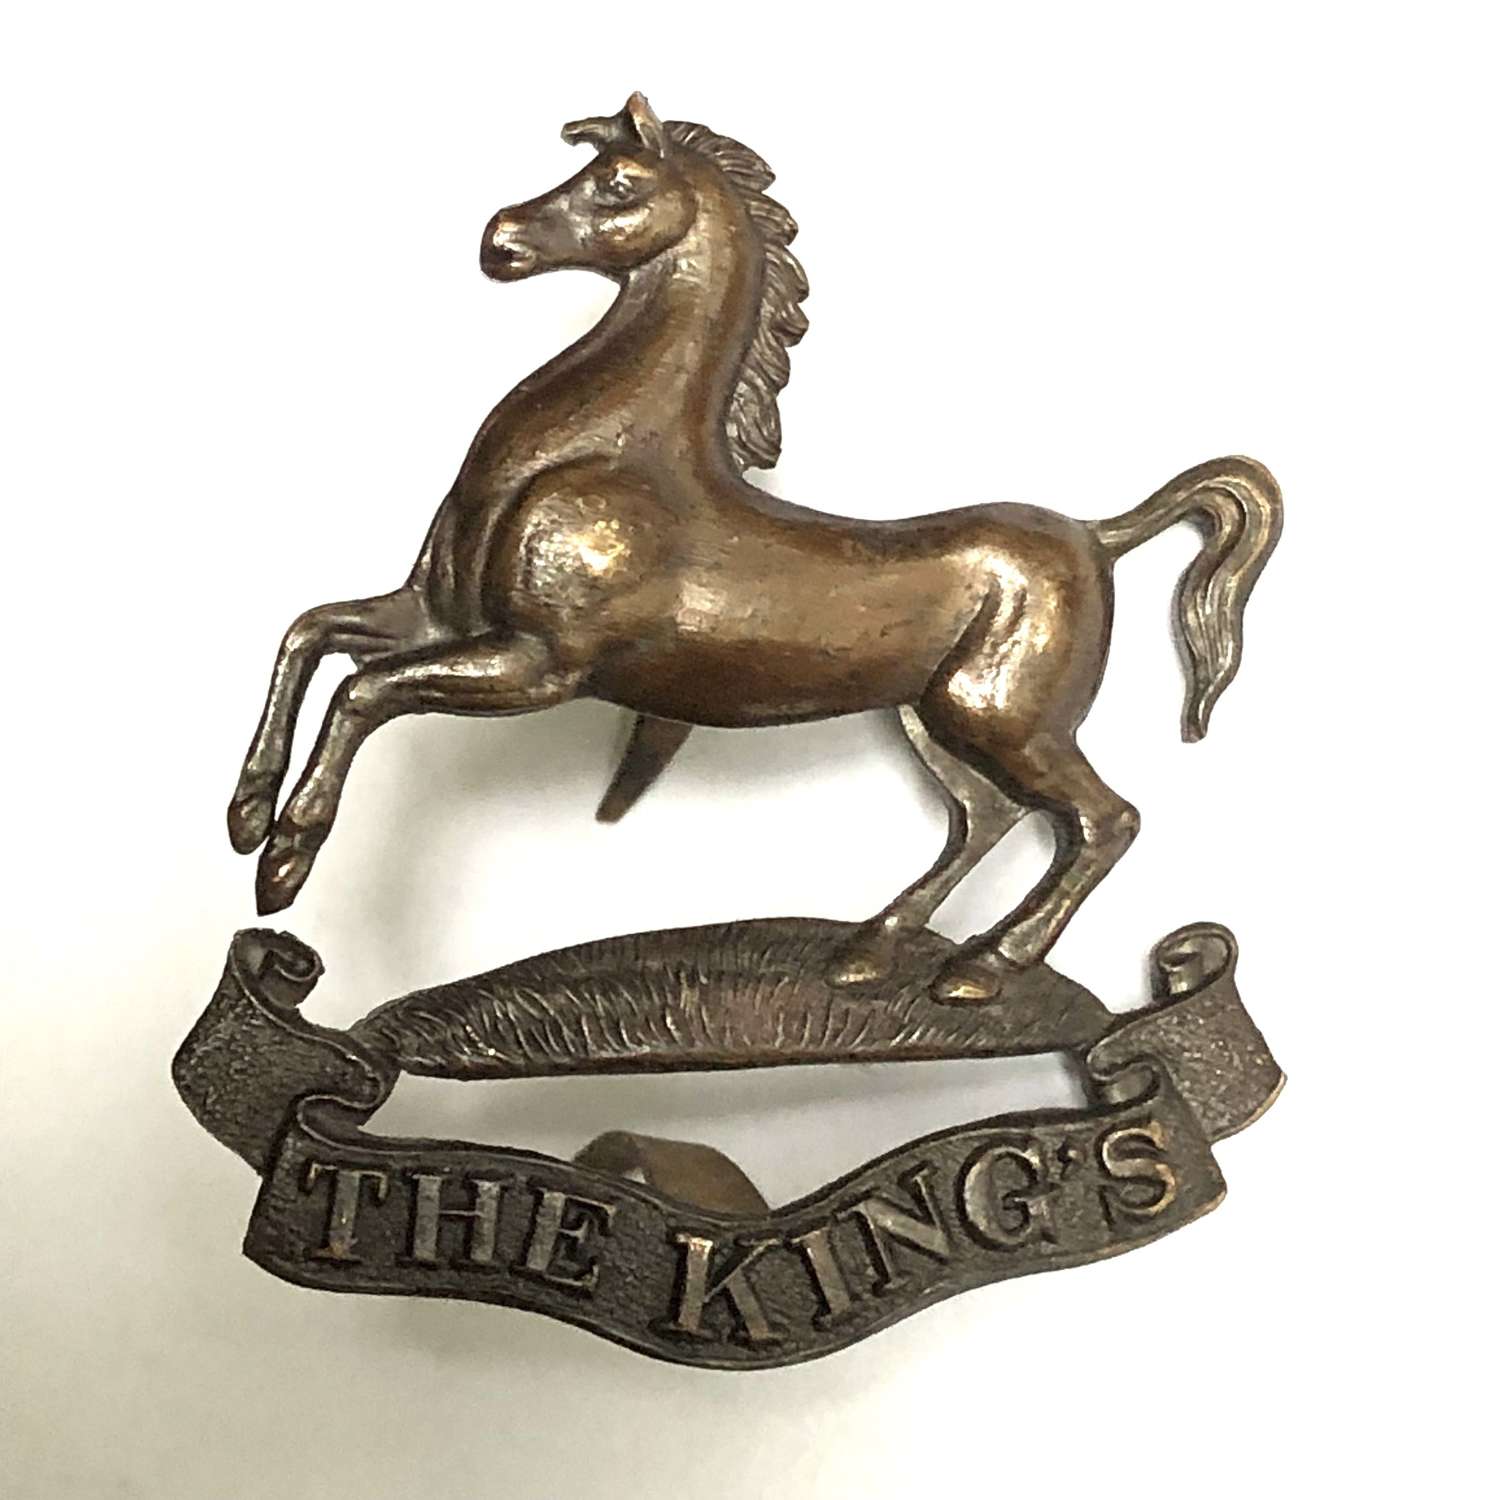 King's Liverpool Regiment OSD cap badge circa 1902-26